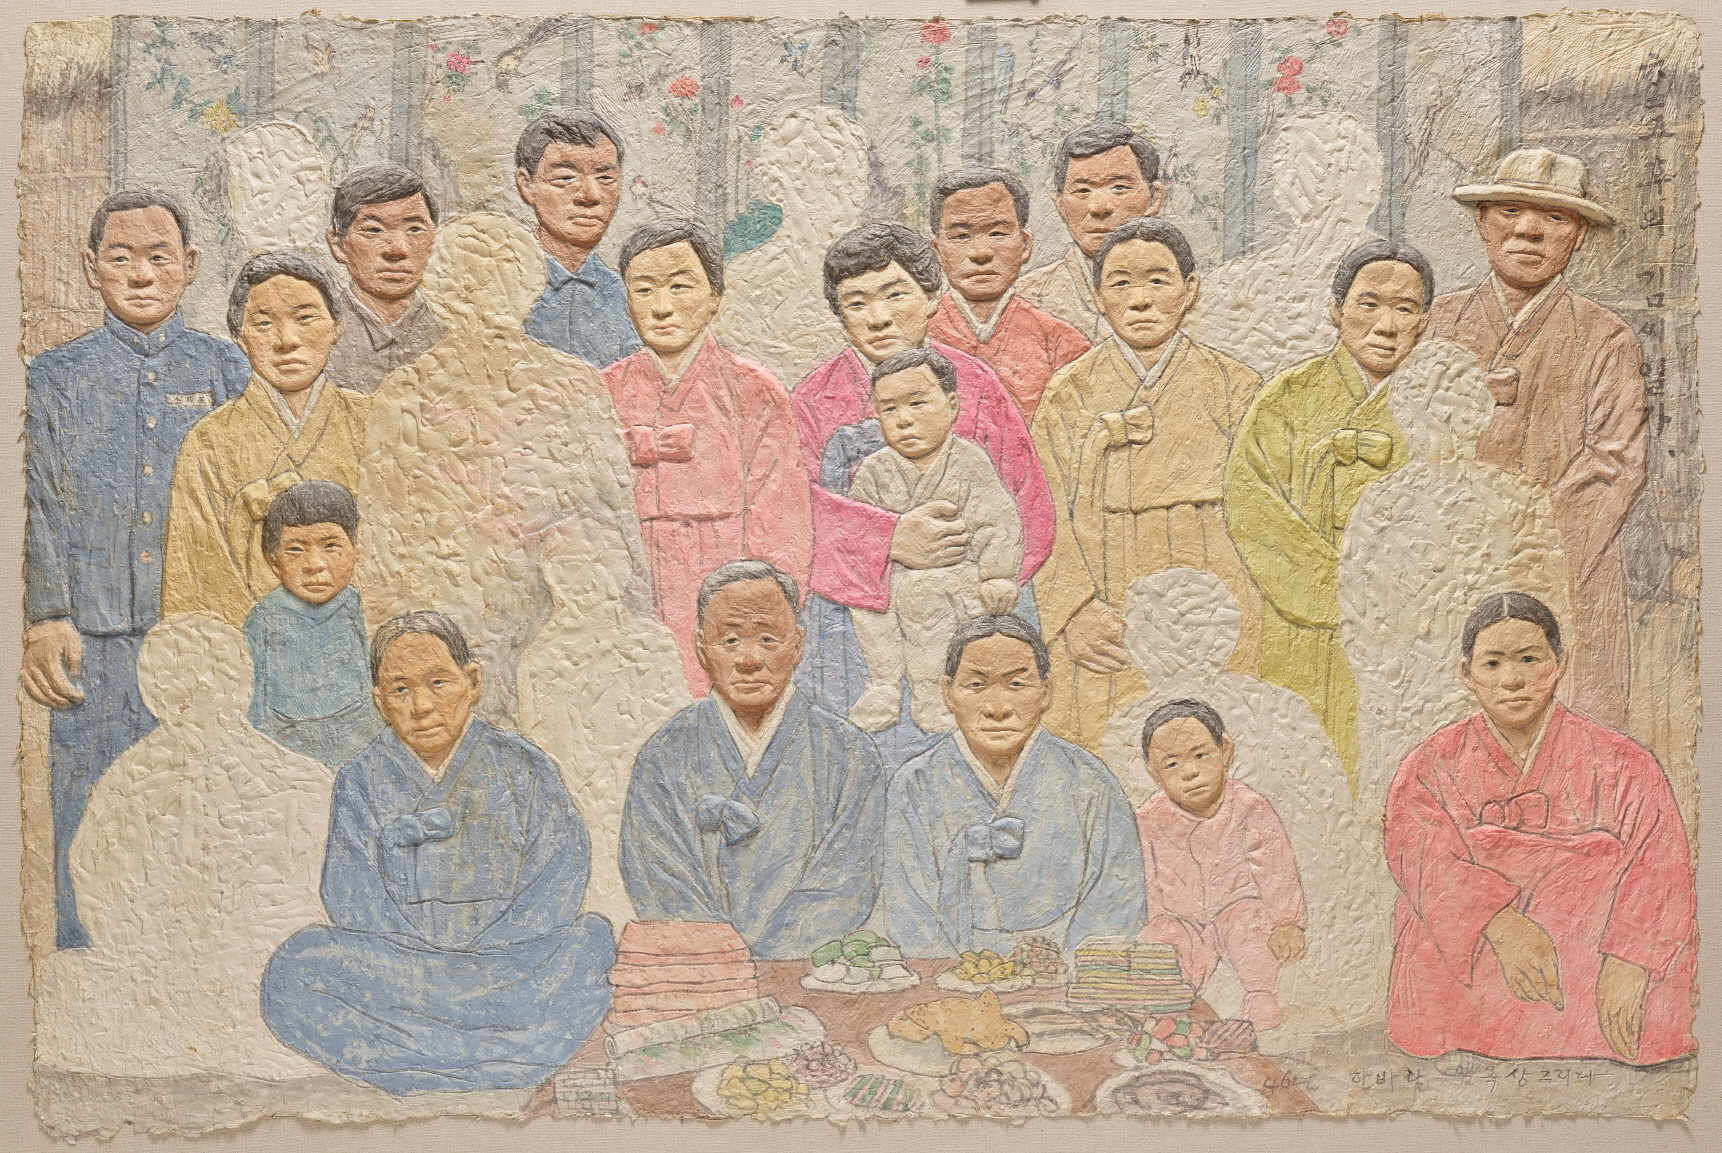 임옥상, 6.25후의 김씨일가, 1990, 종이부조에 수묵채색, 131x198cm, 국립현대미술관 소장